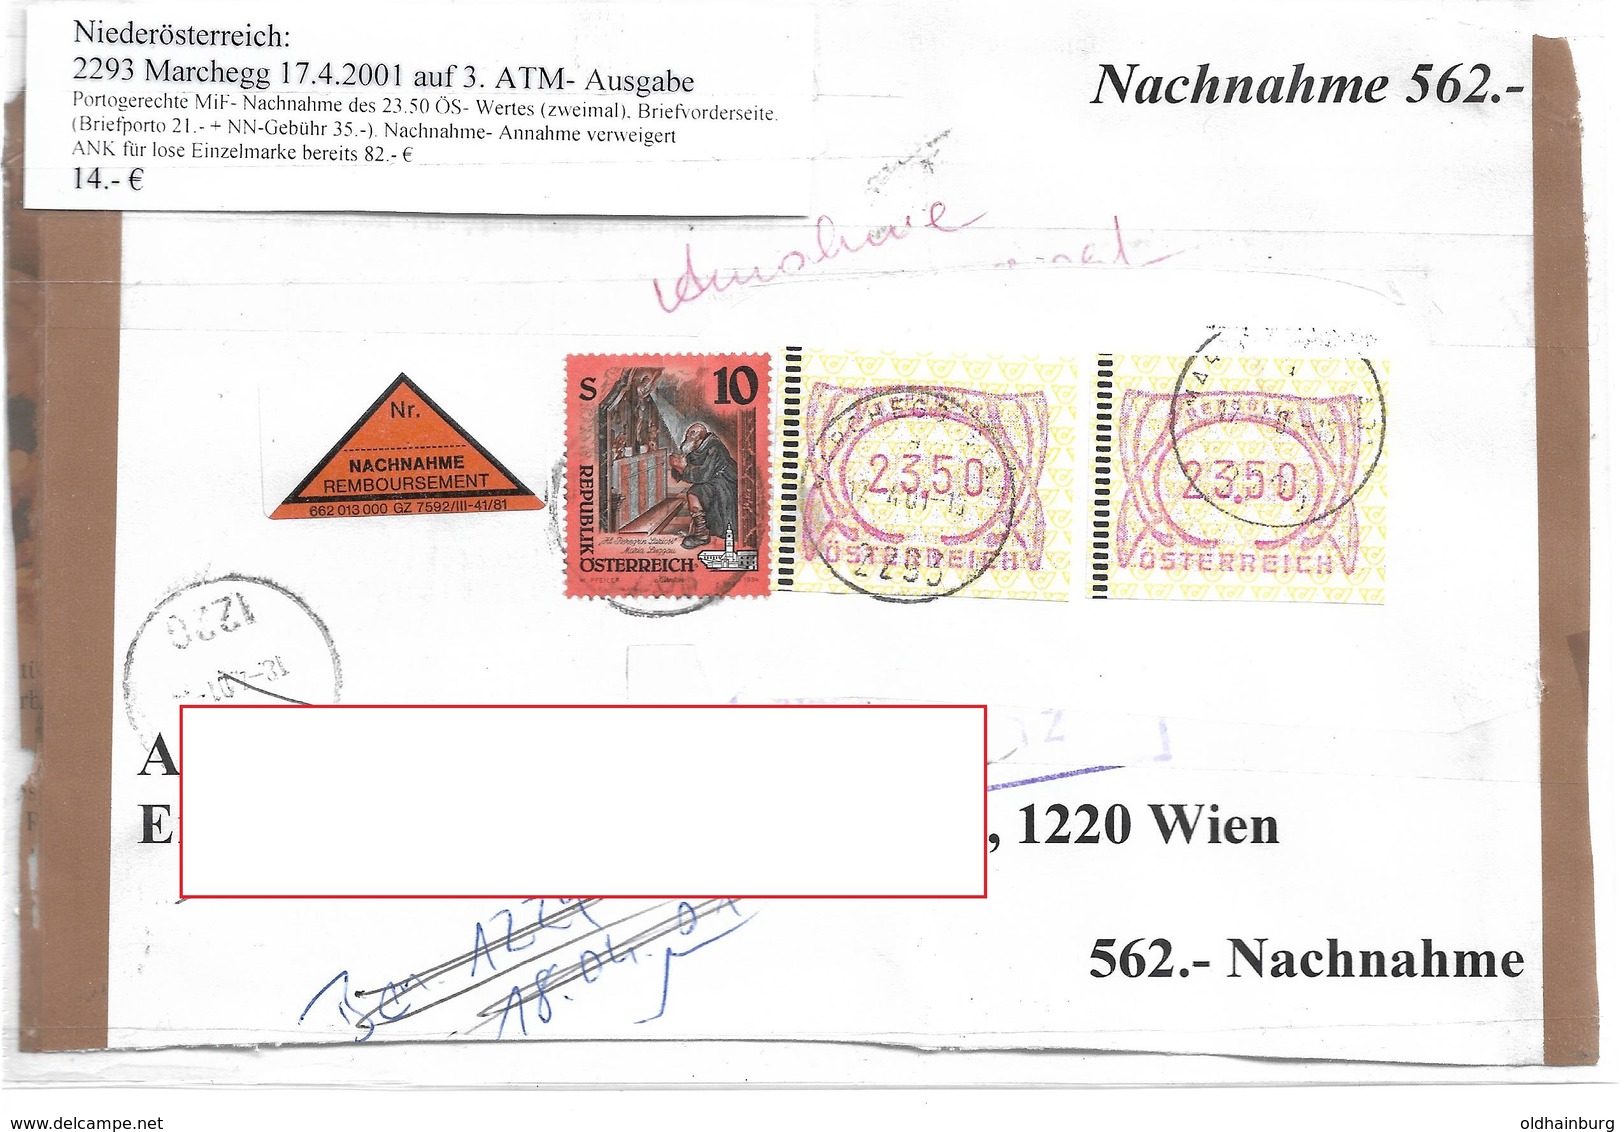 3099n: Heimatbeleg 2293 Marchegg 17.4.2001, Nachnahme- Briefvorderseite - Gänserndorf